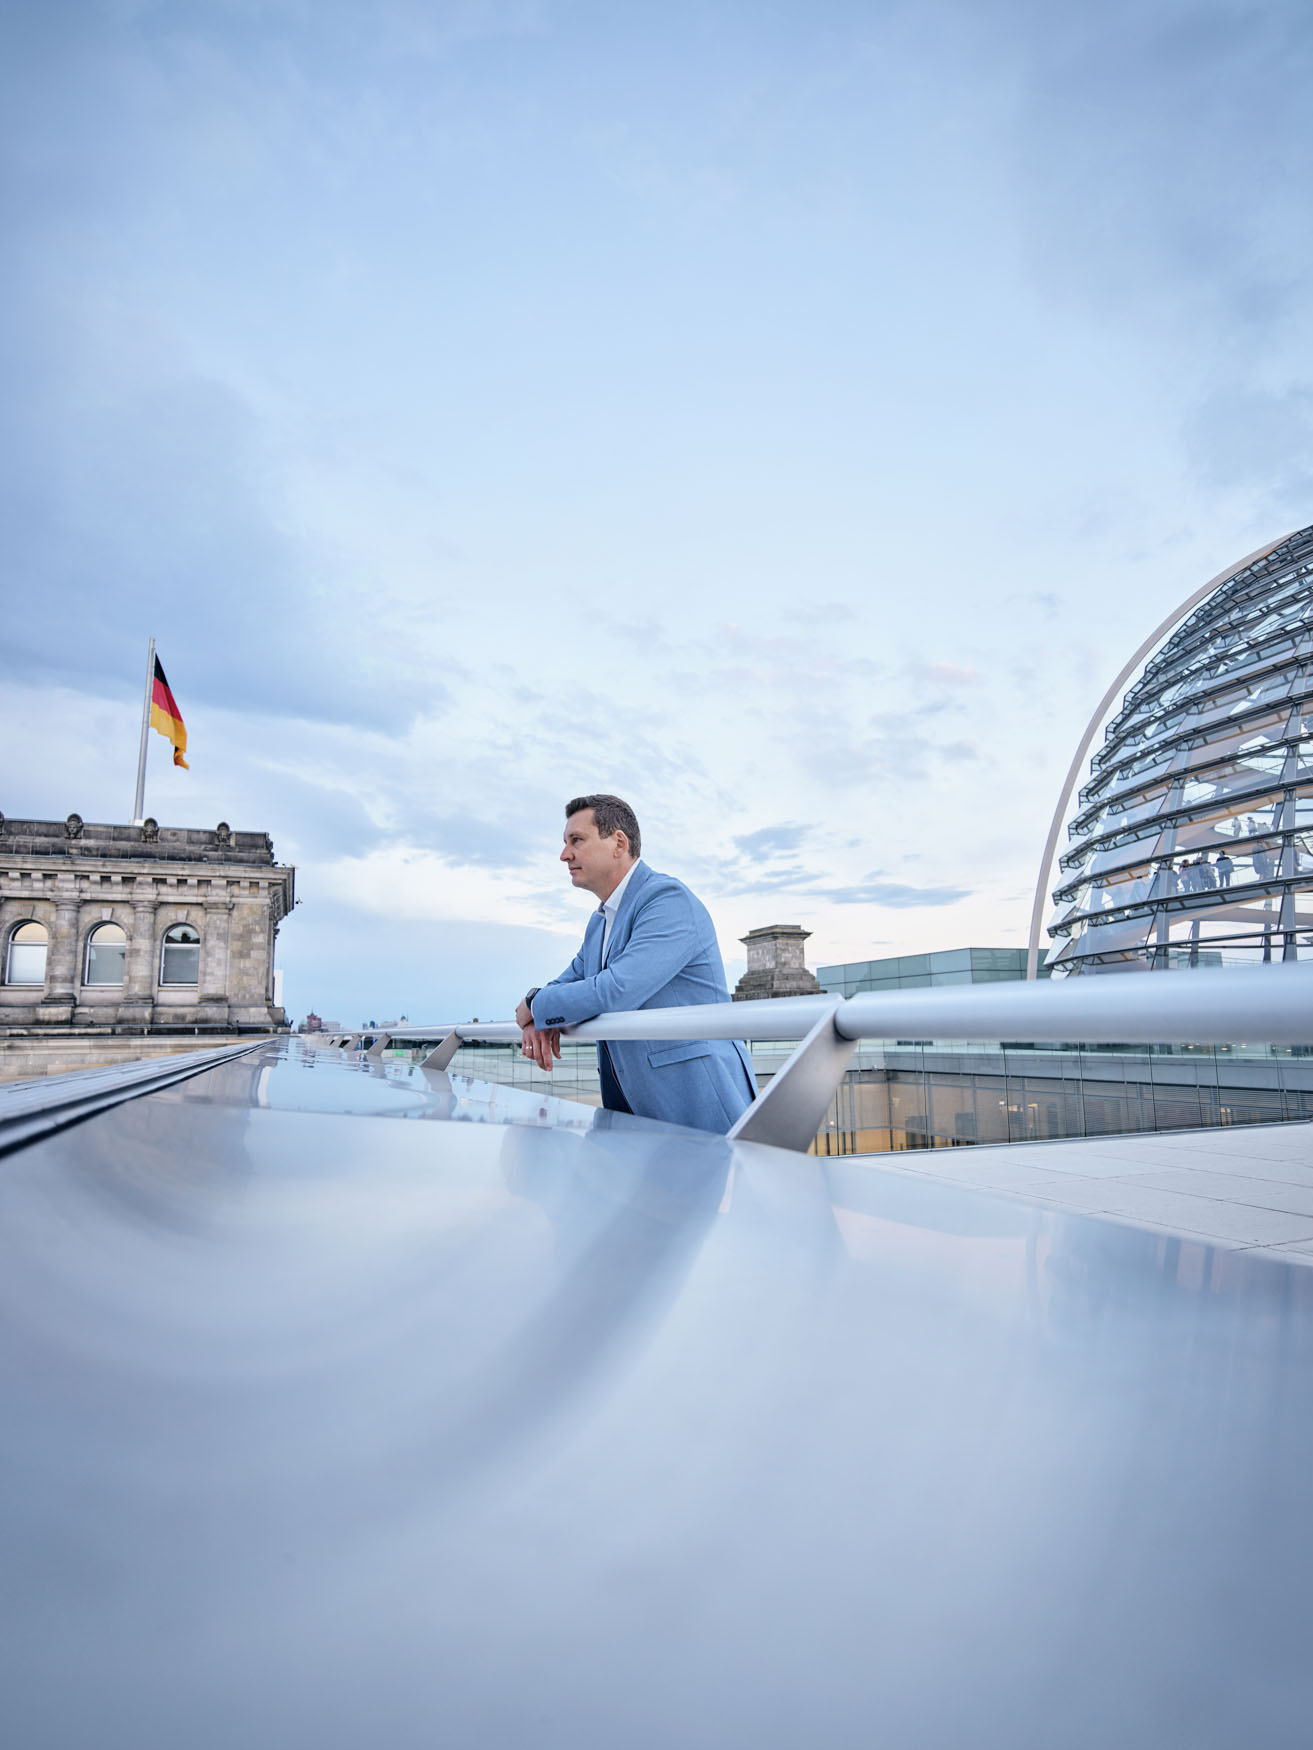 Mario Brandenburg ein super freundlicher und überzeugter „Pfälzer“ Politiker, der sich für die Zukunft Deutschlands einsetzt. Seine Arbeit als Mitglied der FDP zeigt deutlich, dass er an seinen Überzeugungen und Zielen festhält und bereit ist, dafür zu kämpfen. 